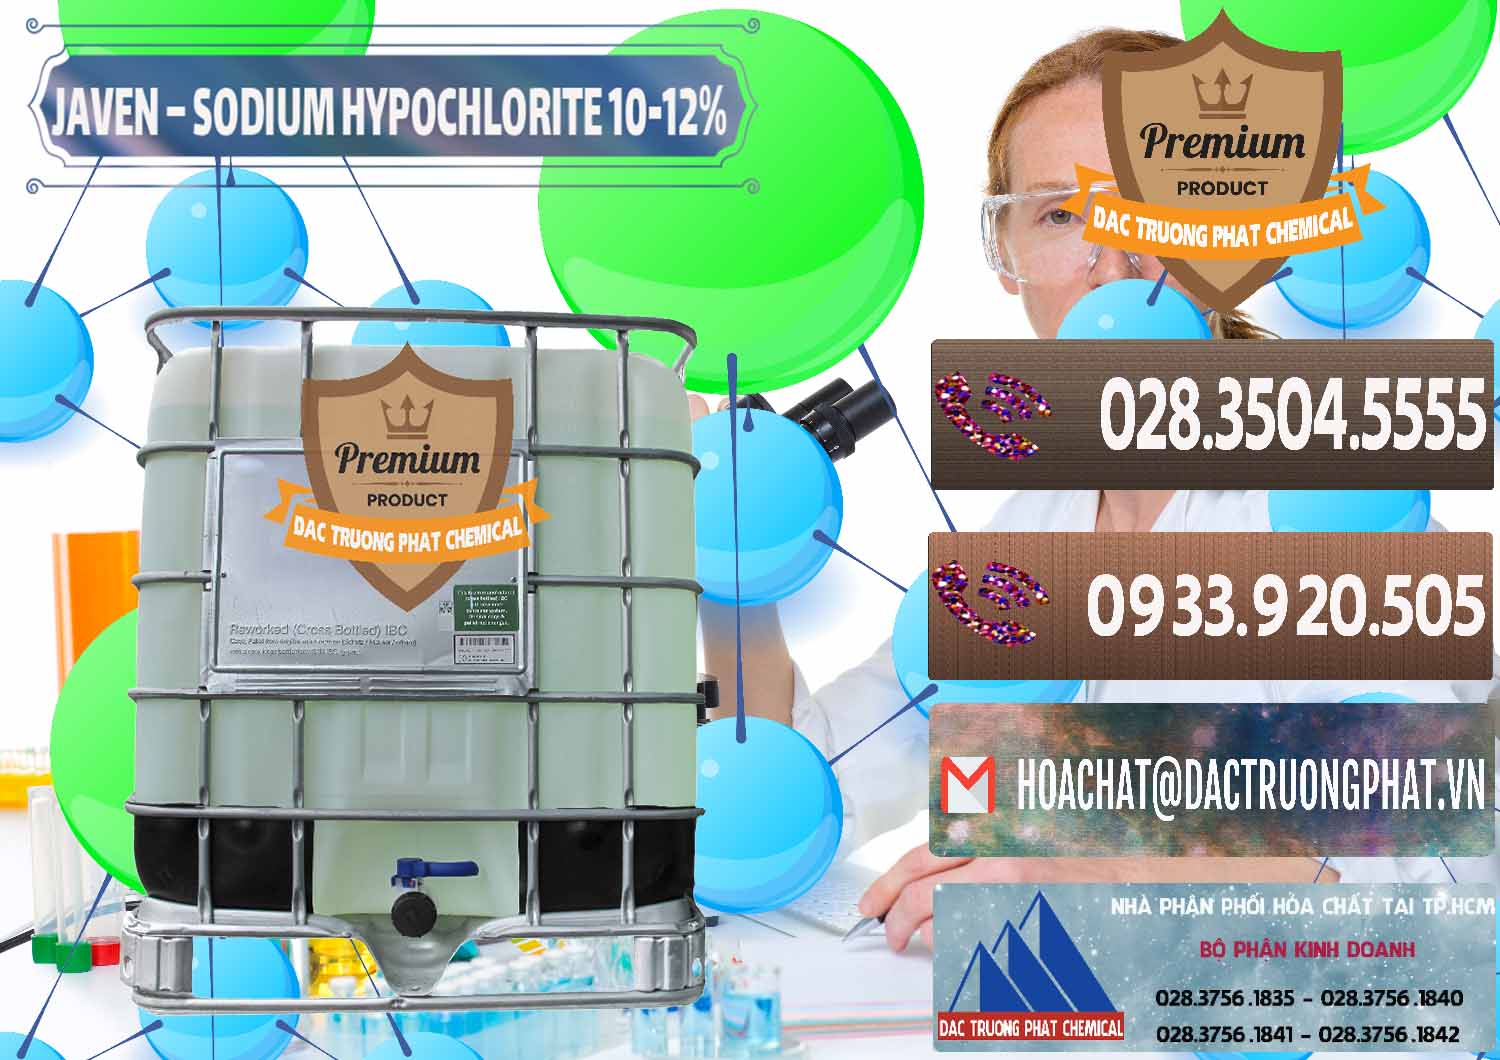 Đơn vị bán và cung cấp Javen - Sodium Hypochlorite 10-12% Việt Nam - 0188 - Cty chuyên cung cấp và kinh doanh hóa chất tại TP.HCM - hoachatviet.net